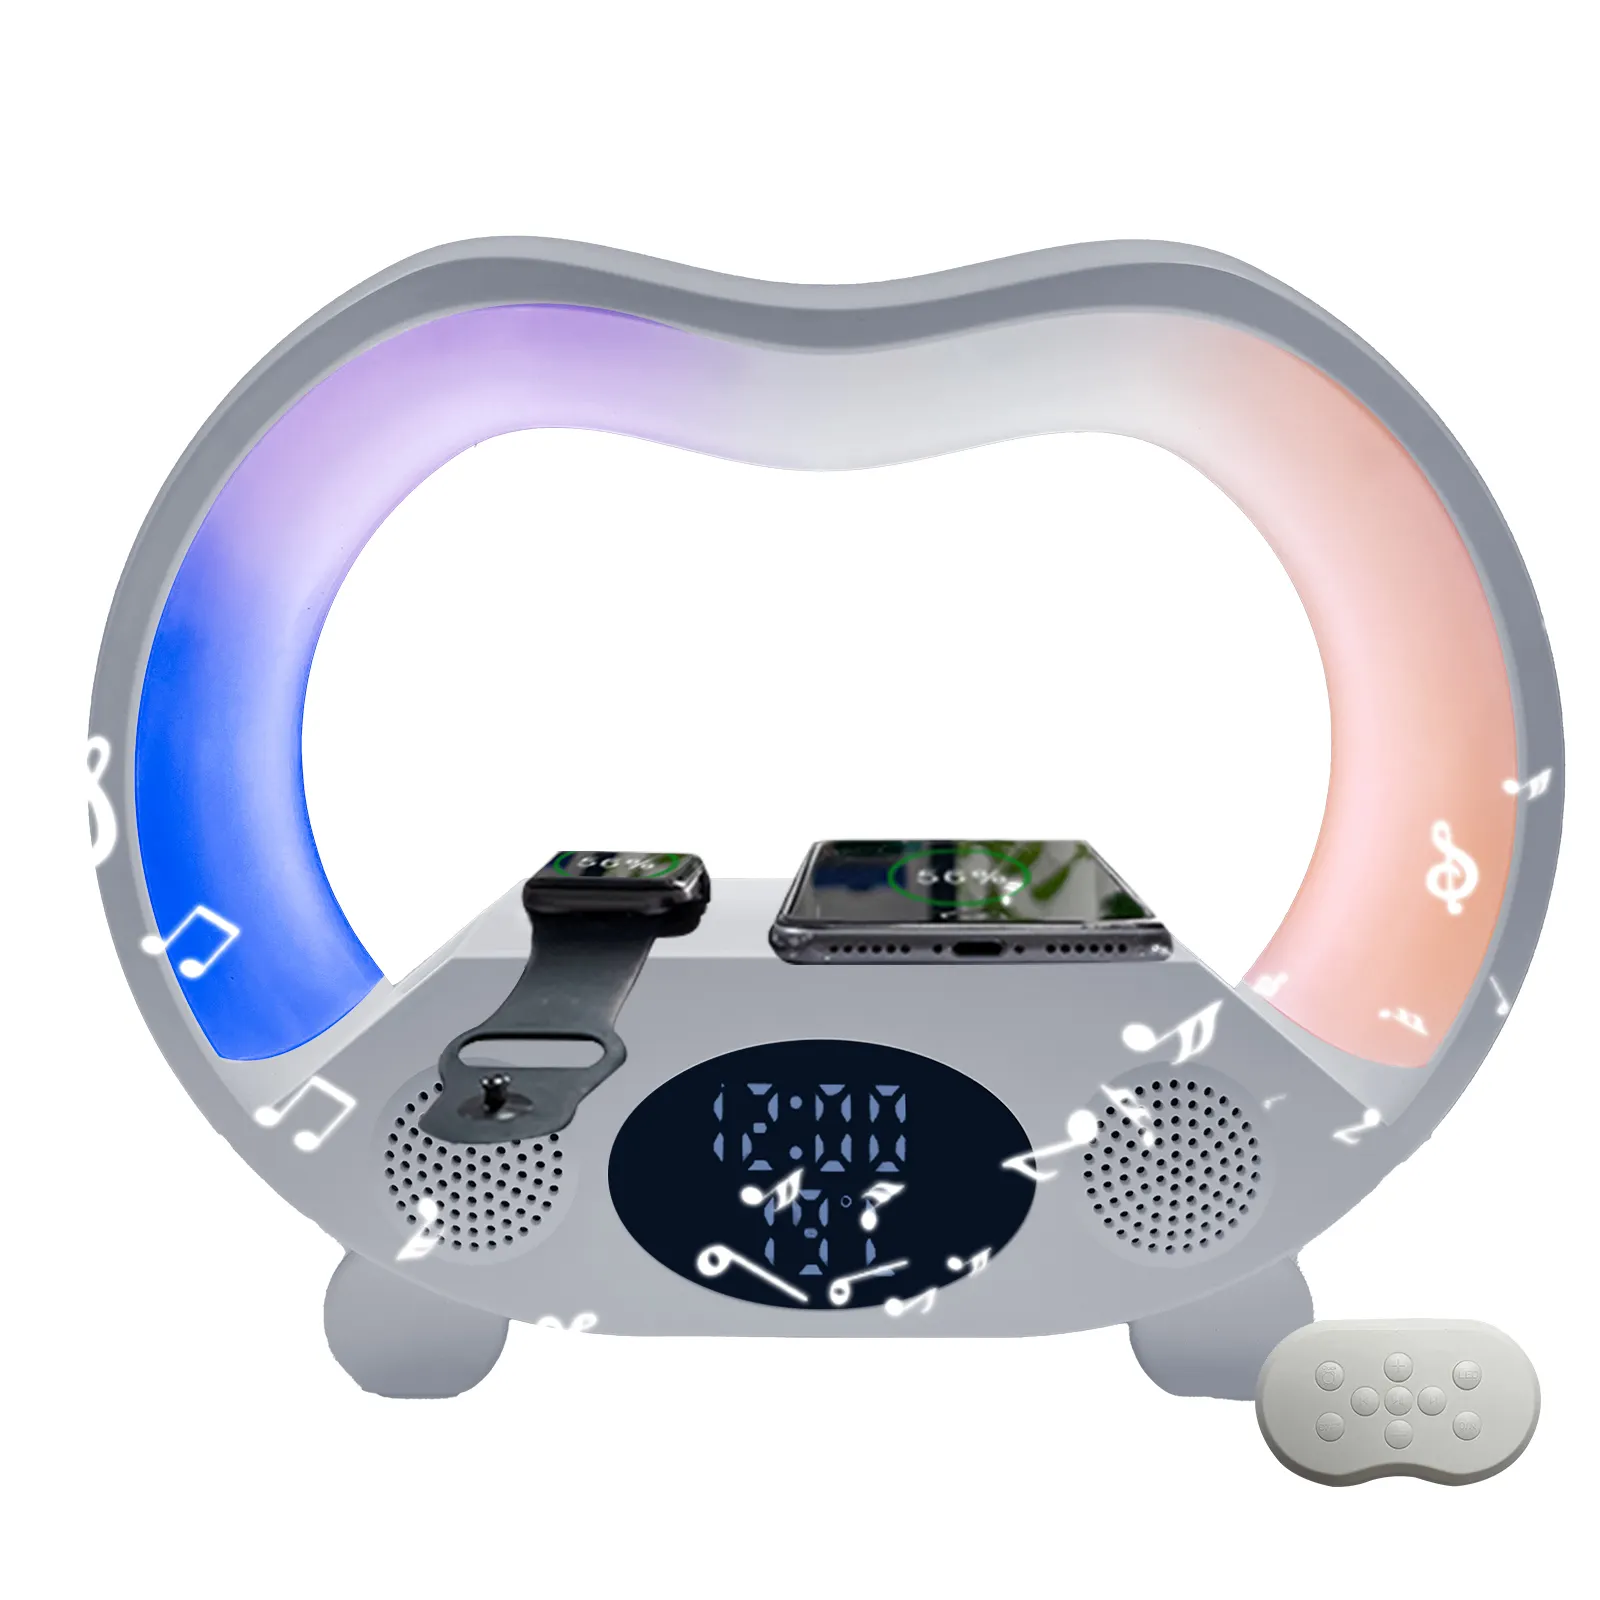 سماعة متعددة الوظائف G بقدرة 15 وات مزودة بمصباح LED سريع لإيقاف الوضع في الليل وإضاءة RGB وساعة مزودة بشاحن لاسلكي مع ساعة ومكبر صوت